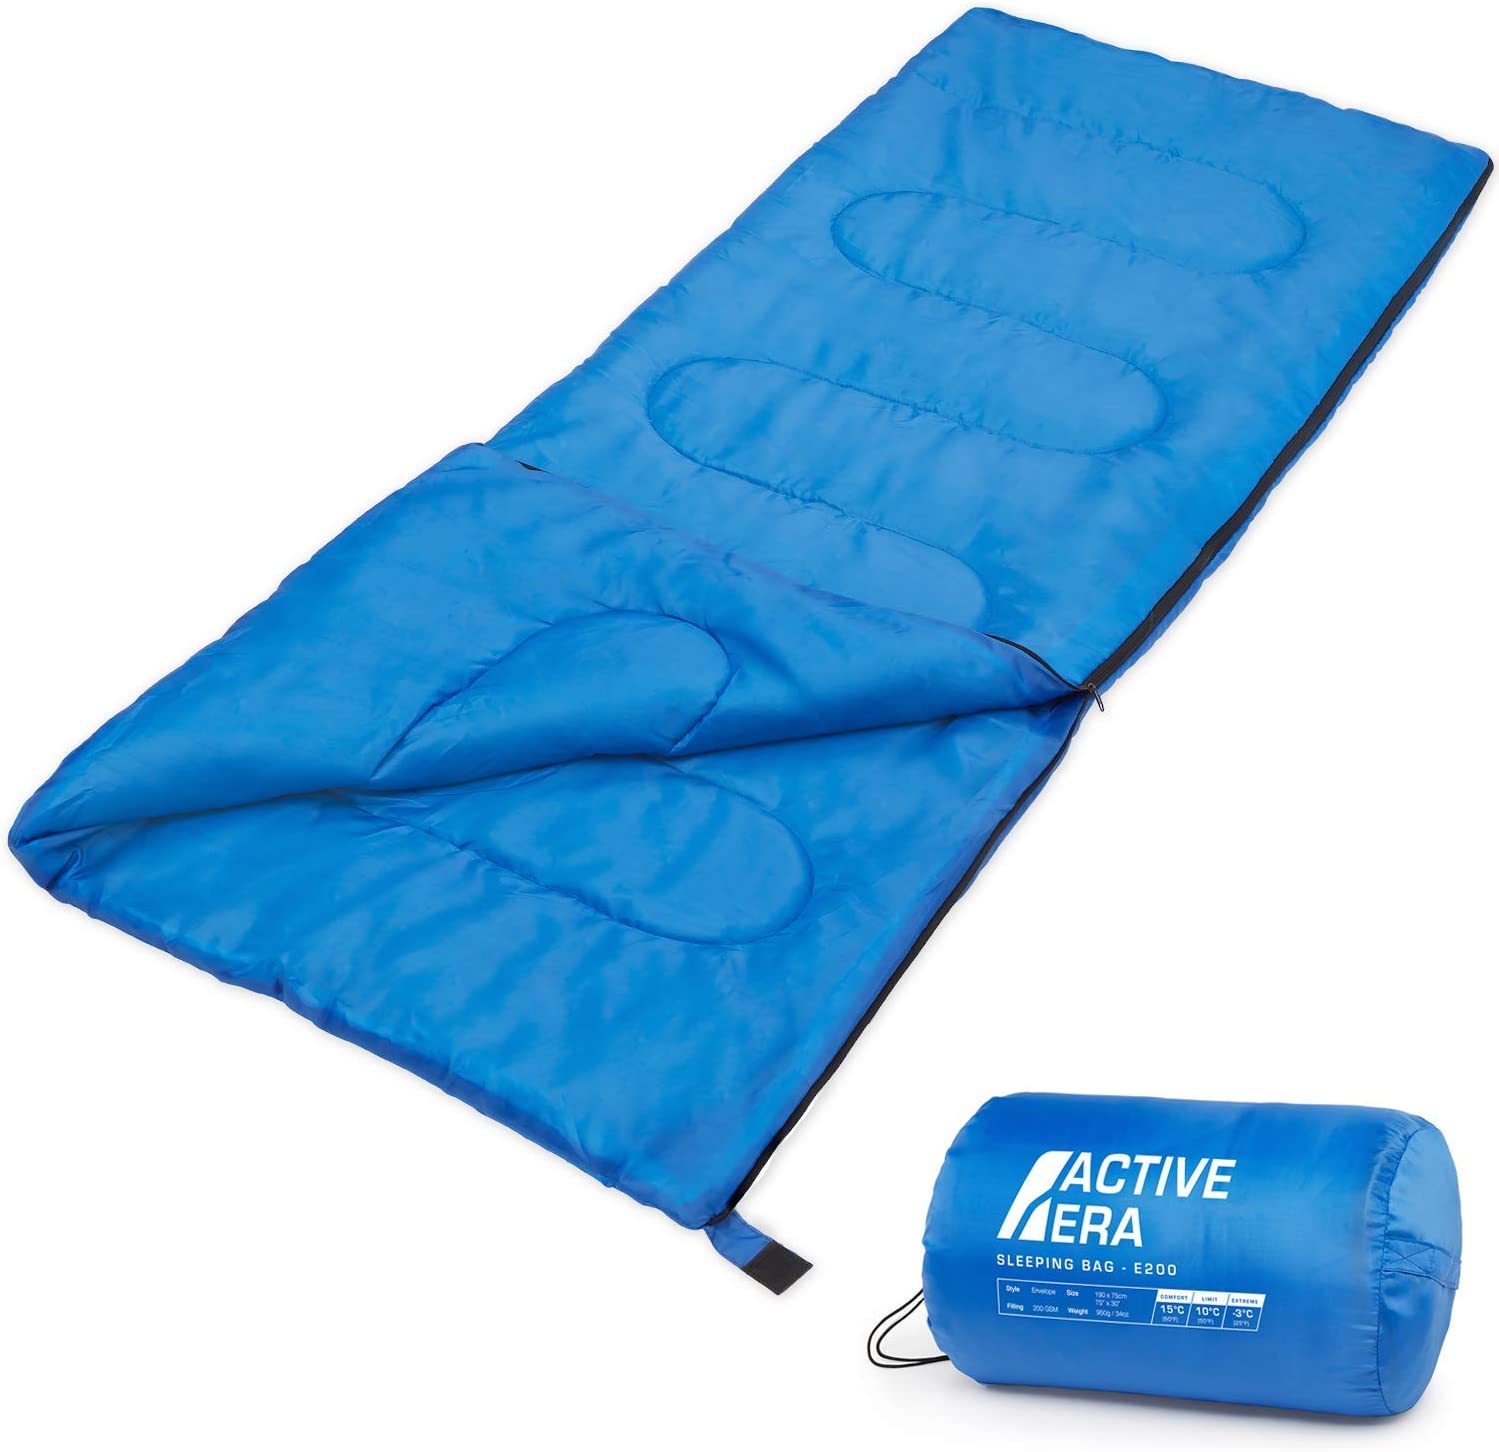 Active Era Ultra Lightweight Sleeping Bag Indoor & Outdoor – Compact, Ultralight Sleeping Bag for Warm Weather – Camping Sleeping Bags for Warm Weather, Sleepovers, Fishing, Outdoor Camping and Hiking